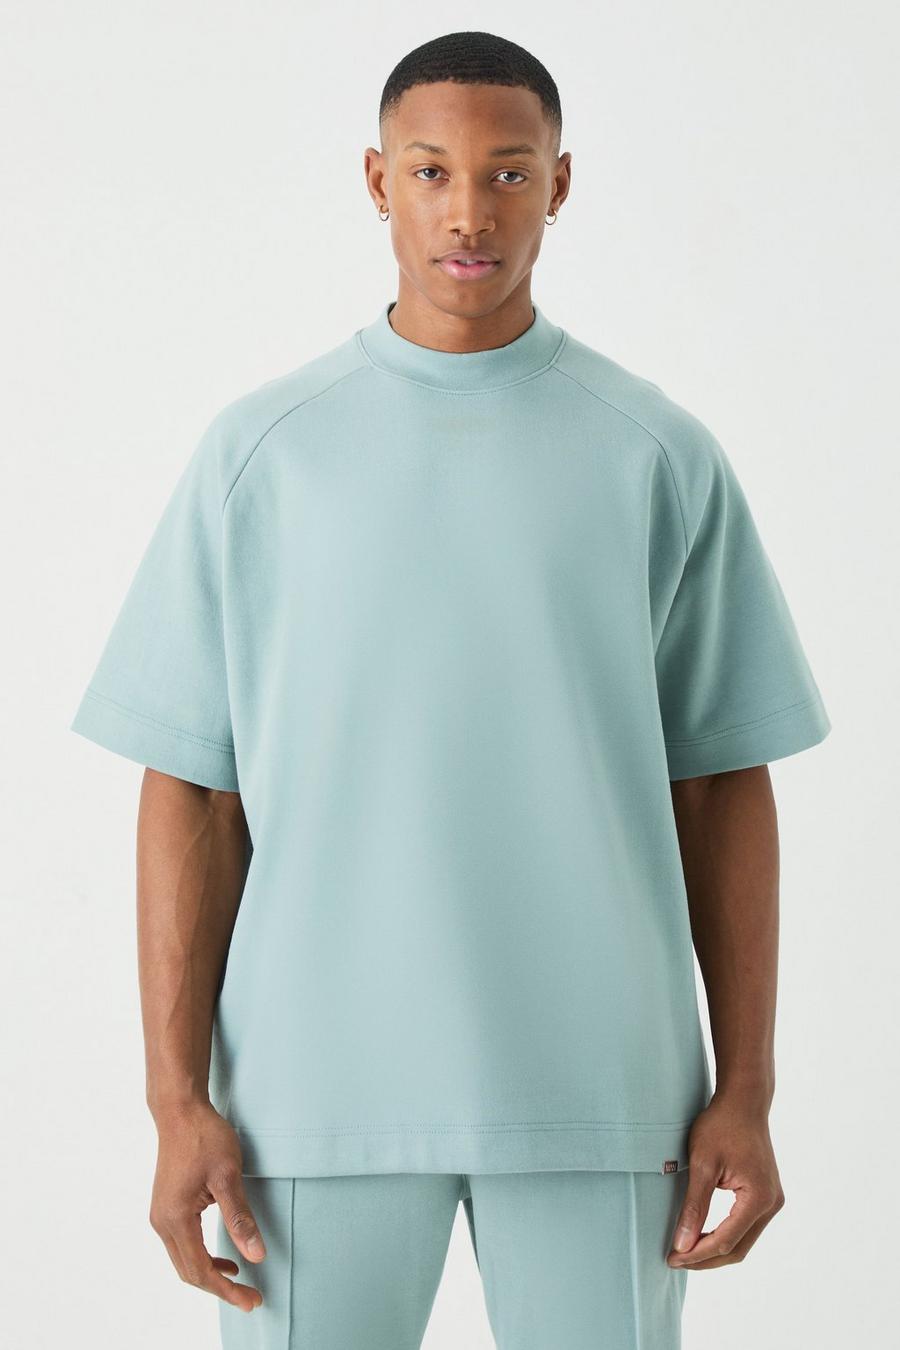 T-shirt Man oversize pesante con maniche raglan e girocollo esteso, Dusty blue